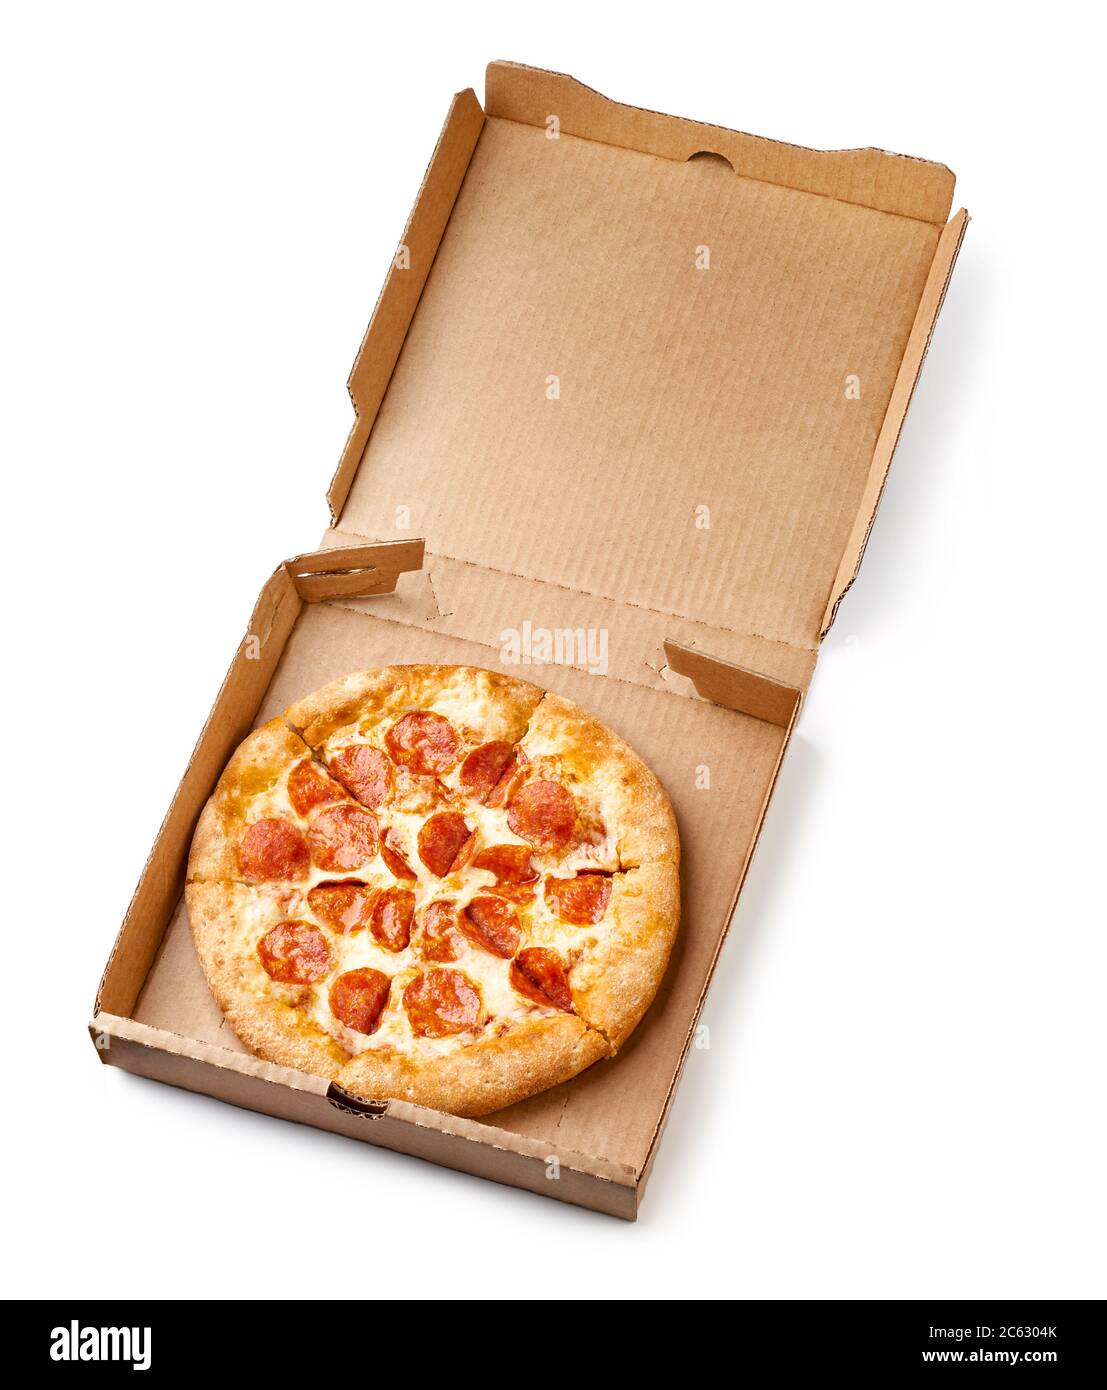 Pizza dans une boîte en carton isolée sur fond blanc. Vue de dessus du forfait pizza. Banque D'Images